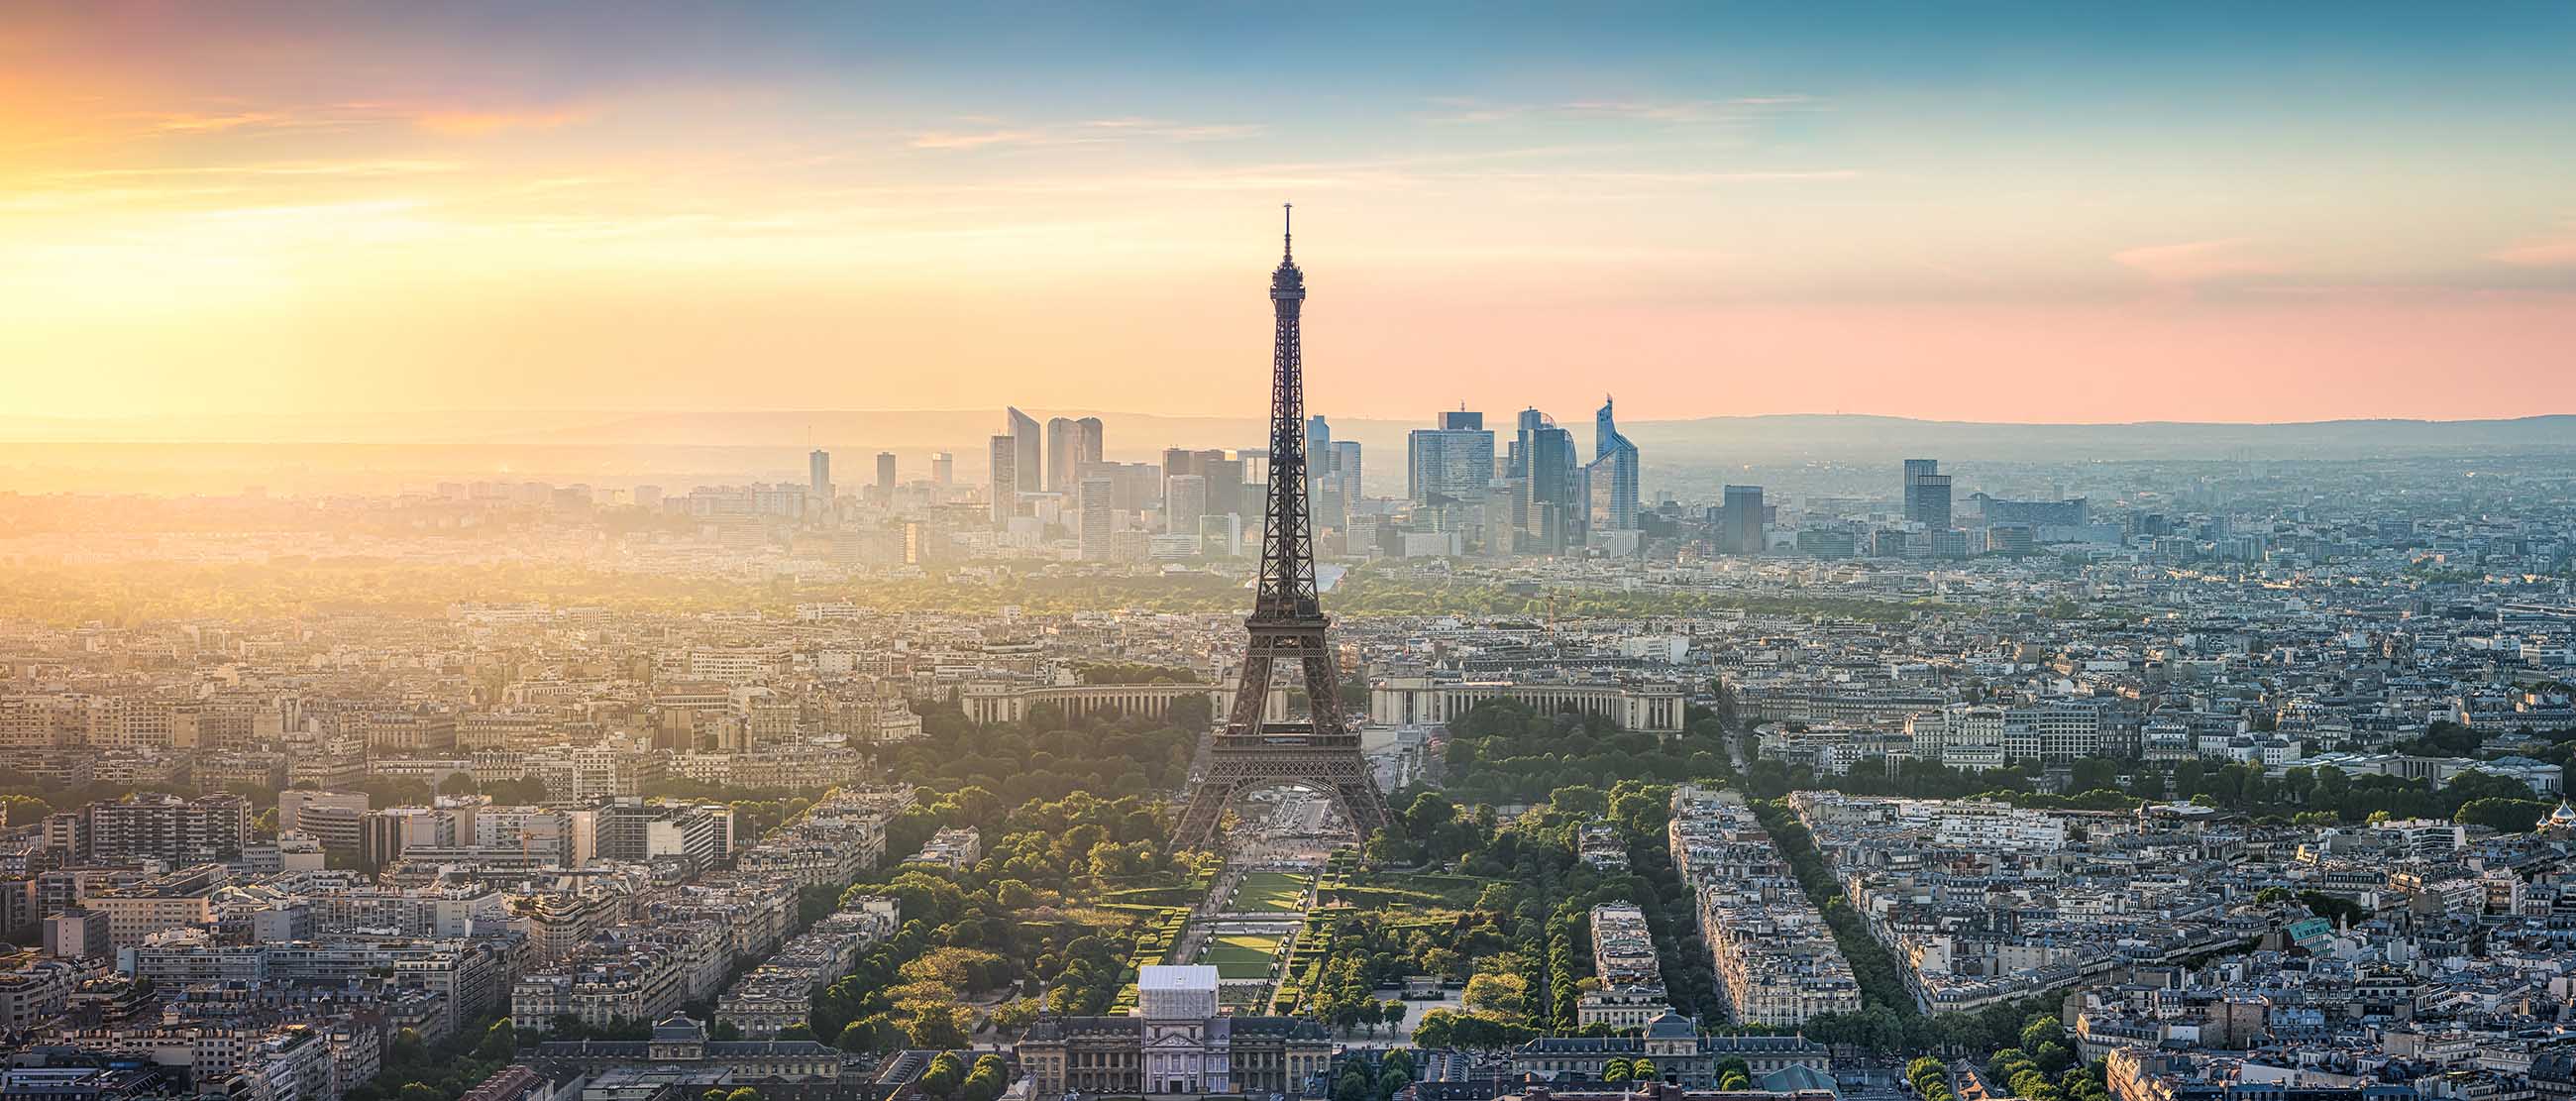 Quý khách có thể ghé thăm Paris vào tháng 3, tháng 4, tháng 9 và tháng 10